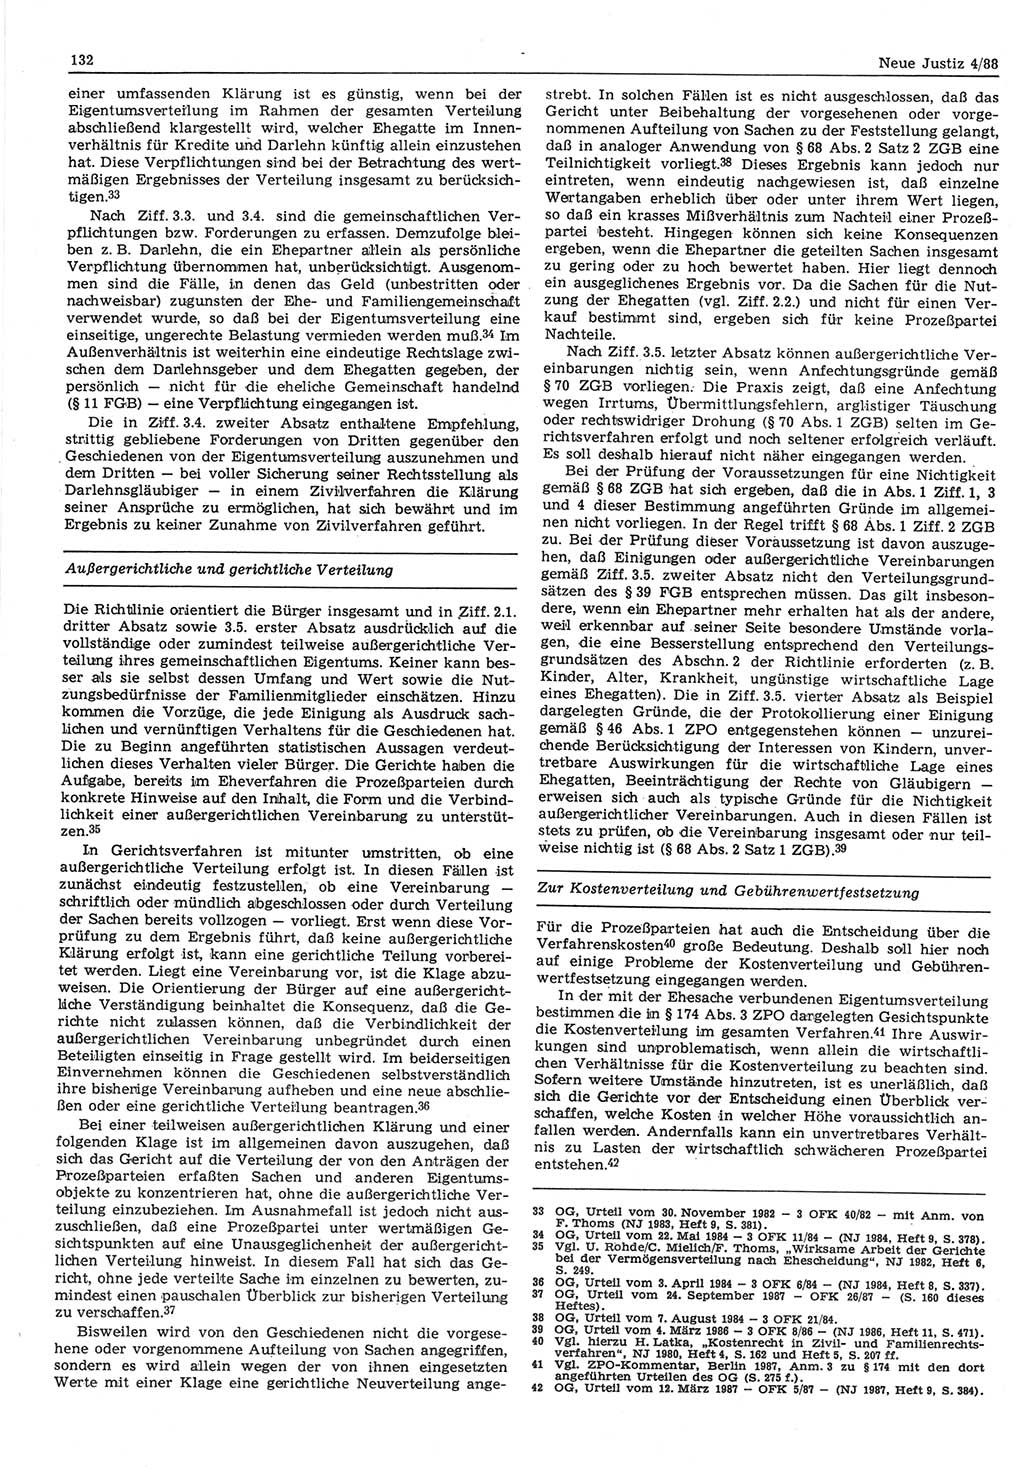 Neue Justiz (NJ), Zeitschrift für sozialistisches Recht und Gesetzlichkeit [Deutsche Demokratische Republik (DDR)], 42. Jahrgang 1988, Seite 132 (NJ DDR 1988, S. 132)